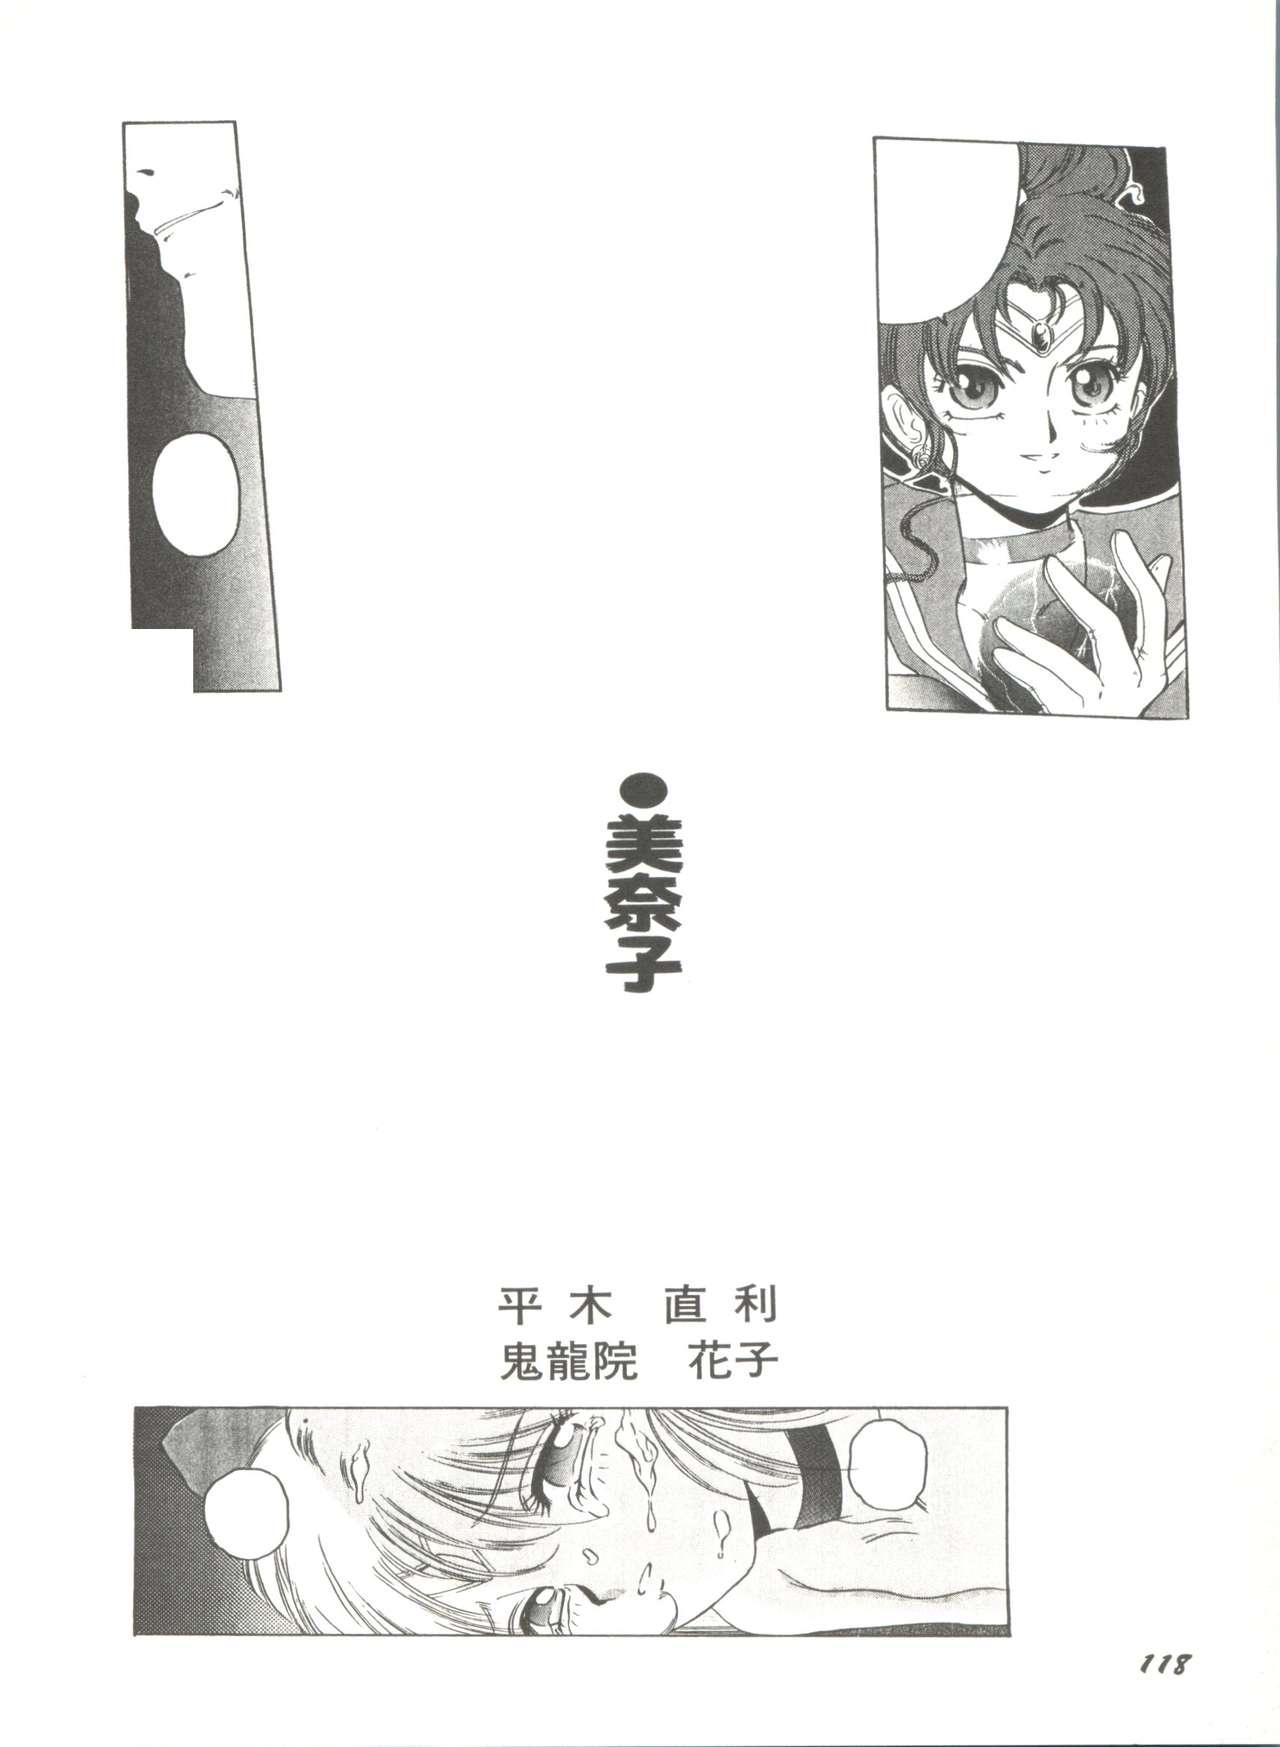 Bishoujo Doujinshi Anthology 2 - Moon Paradise 1 Tsuki no Rakuen 120